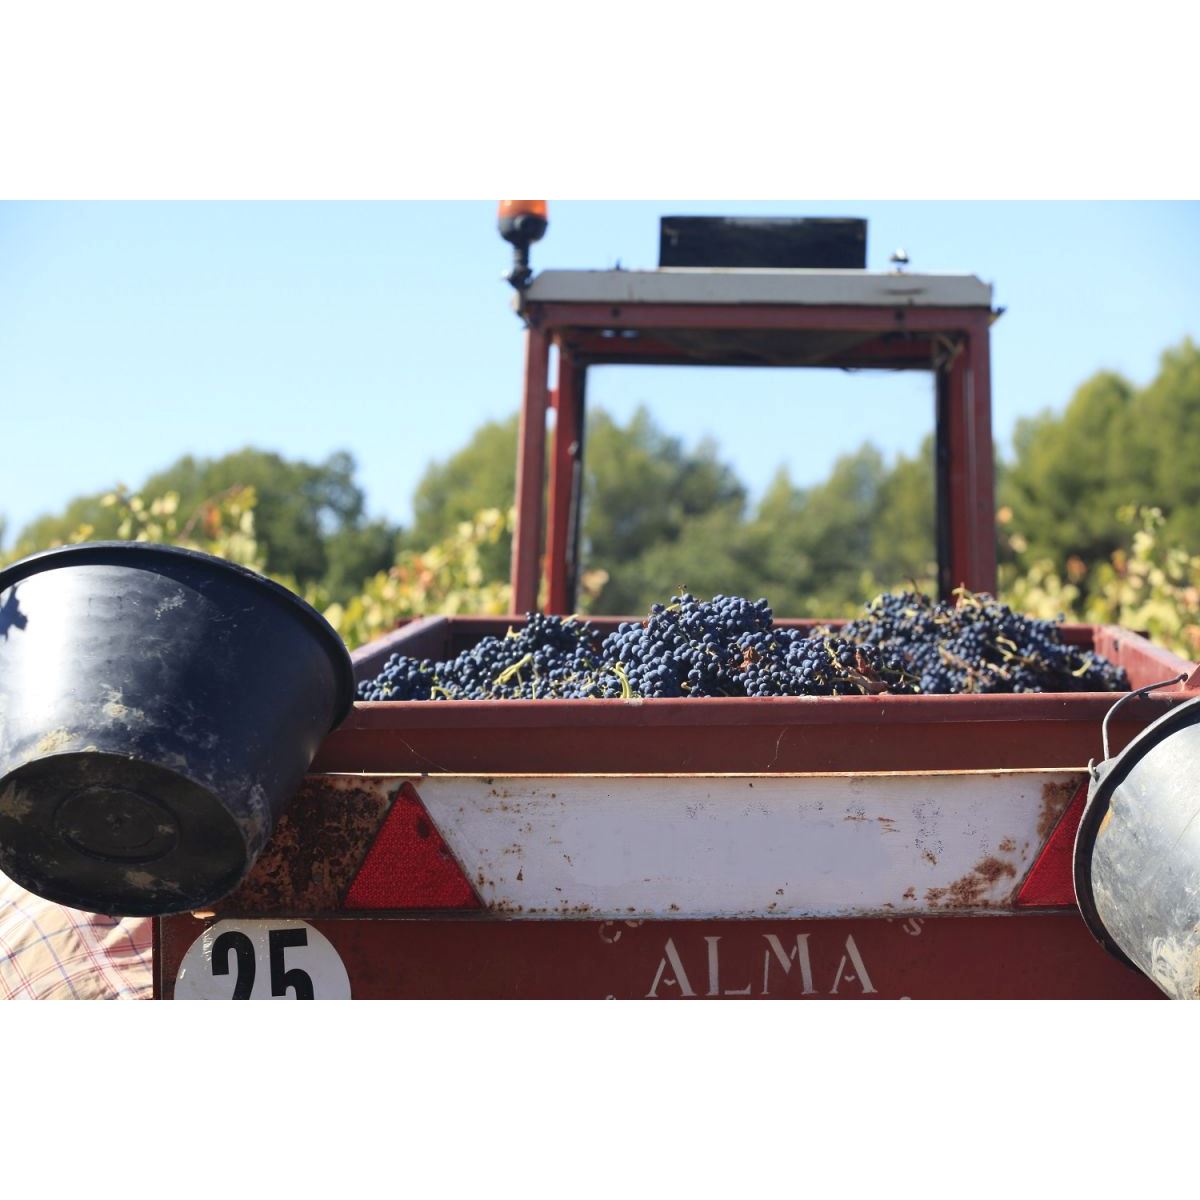 3 magnums de vin 150cl Ventoux Rouge "A mon père" 2020 Vin rouge Vignoble Chasson - Chateau Blanc - The Best of Provence